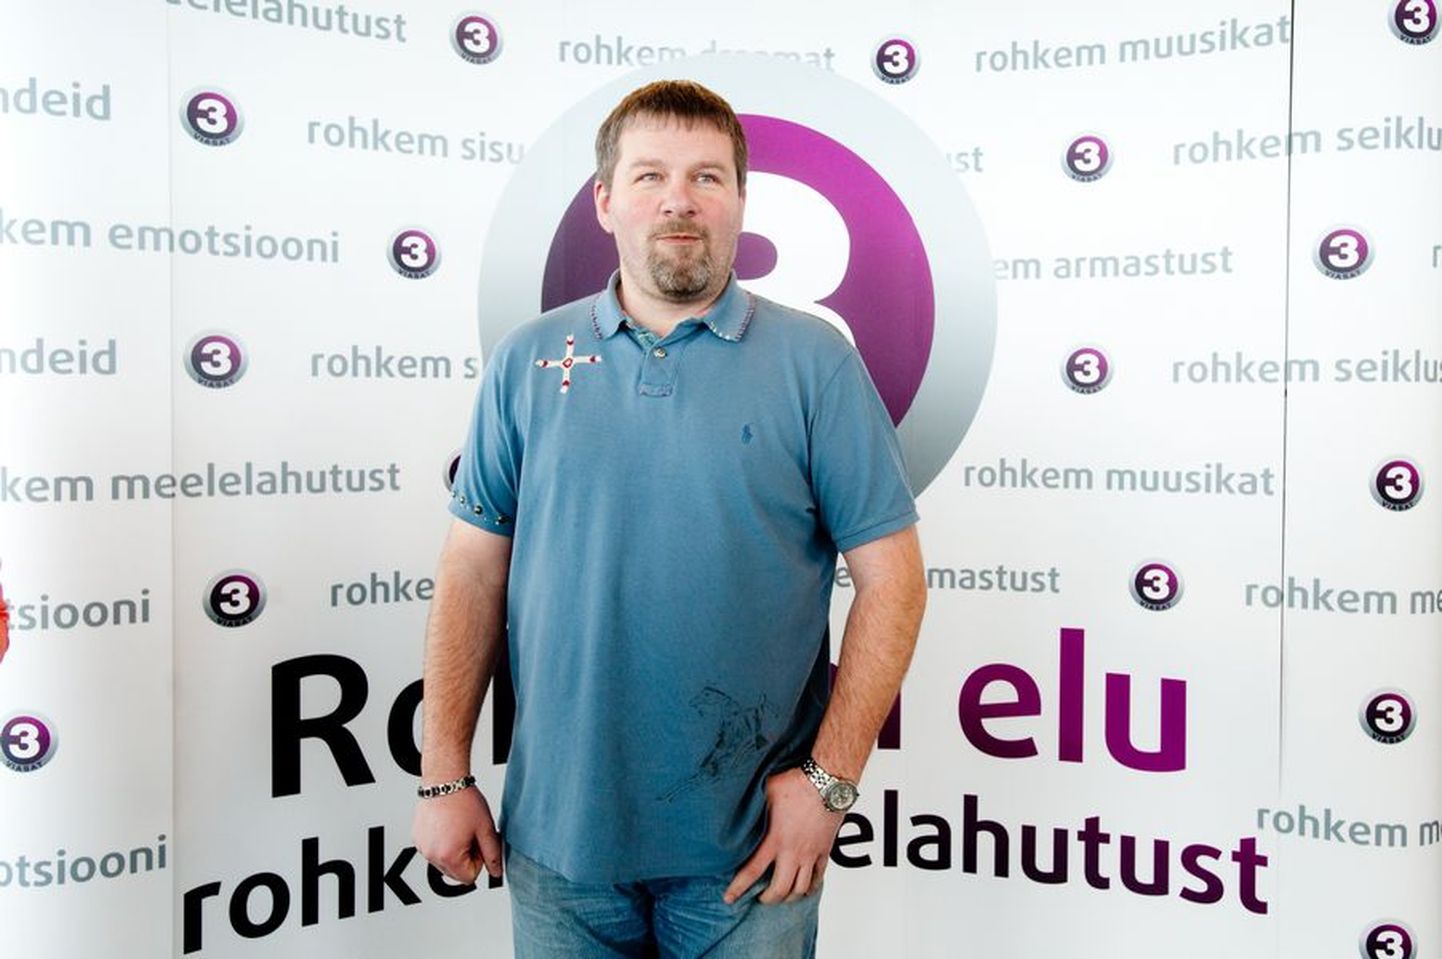 TV3 kevadhommik Tallinna teletornis.
Saate "Rahaauk" saatejuht Alari Kivisaar